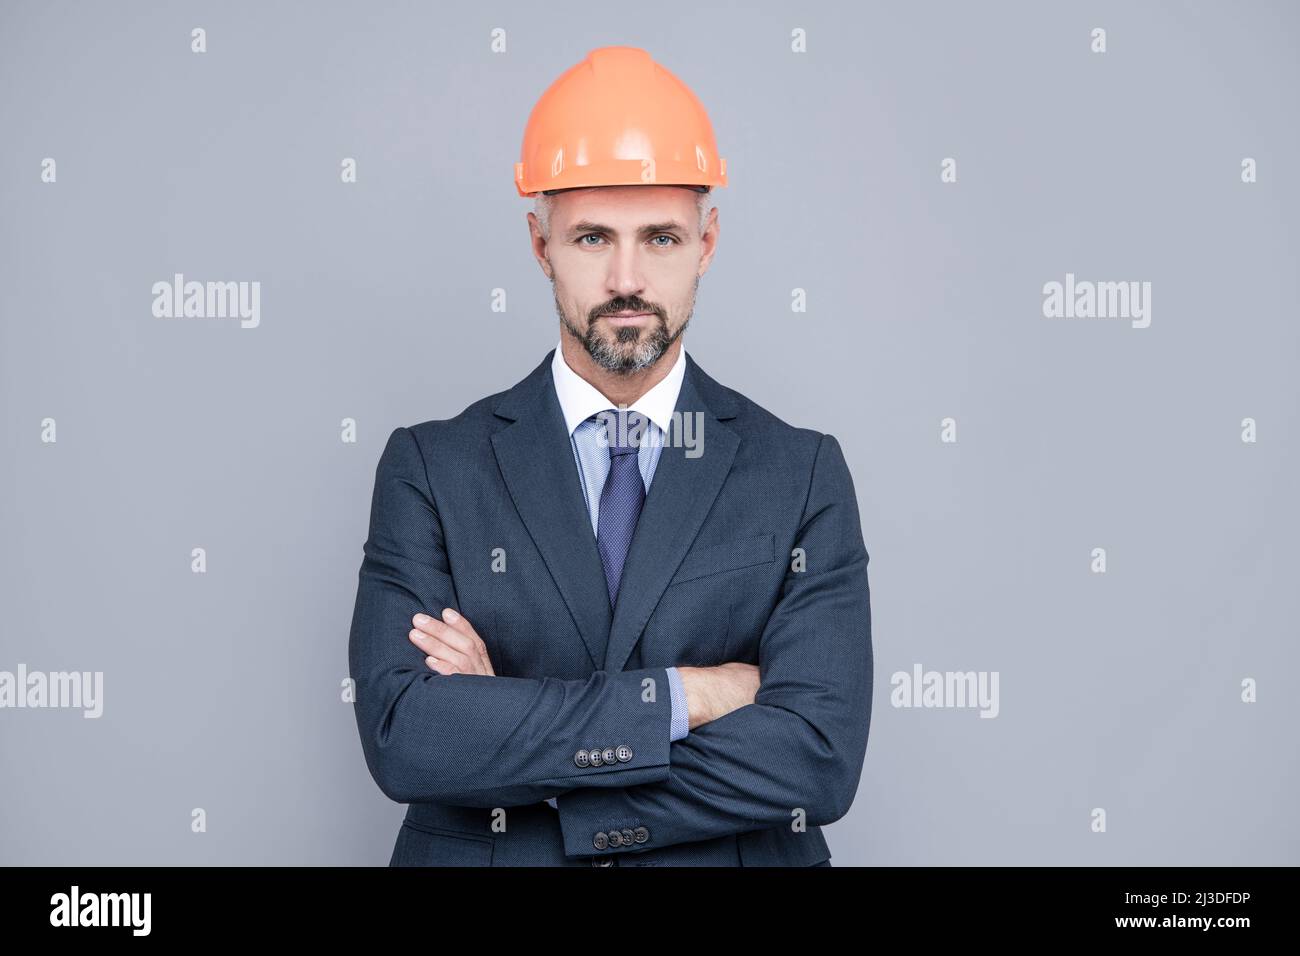 Construya su futuro. El ingeniero de la construcción usa sombrero duro en la ropa de formalwear. Industria de la construcción Foto de stock